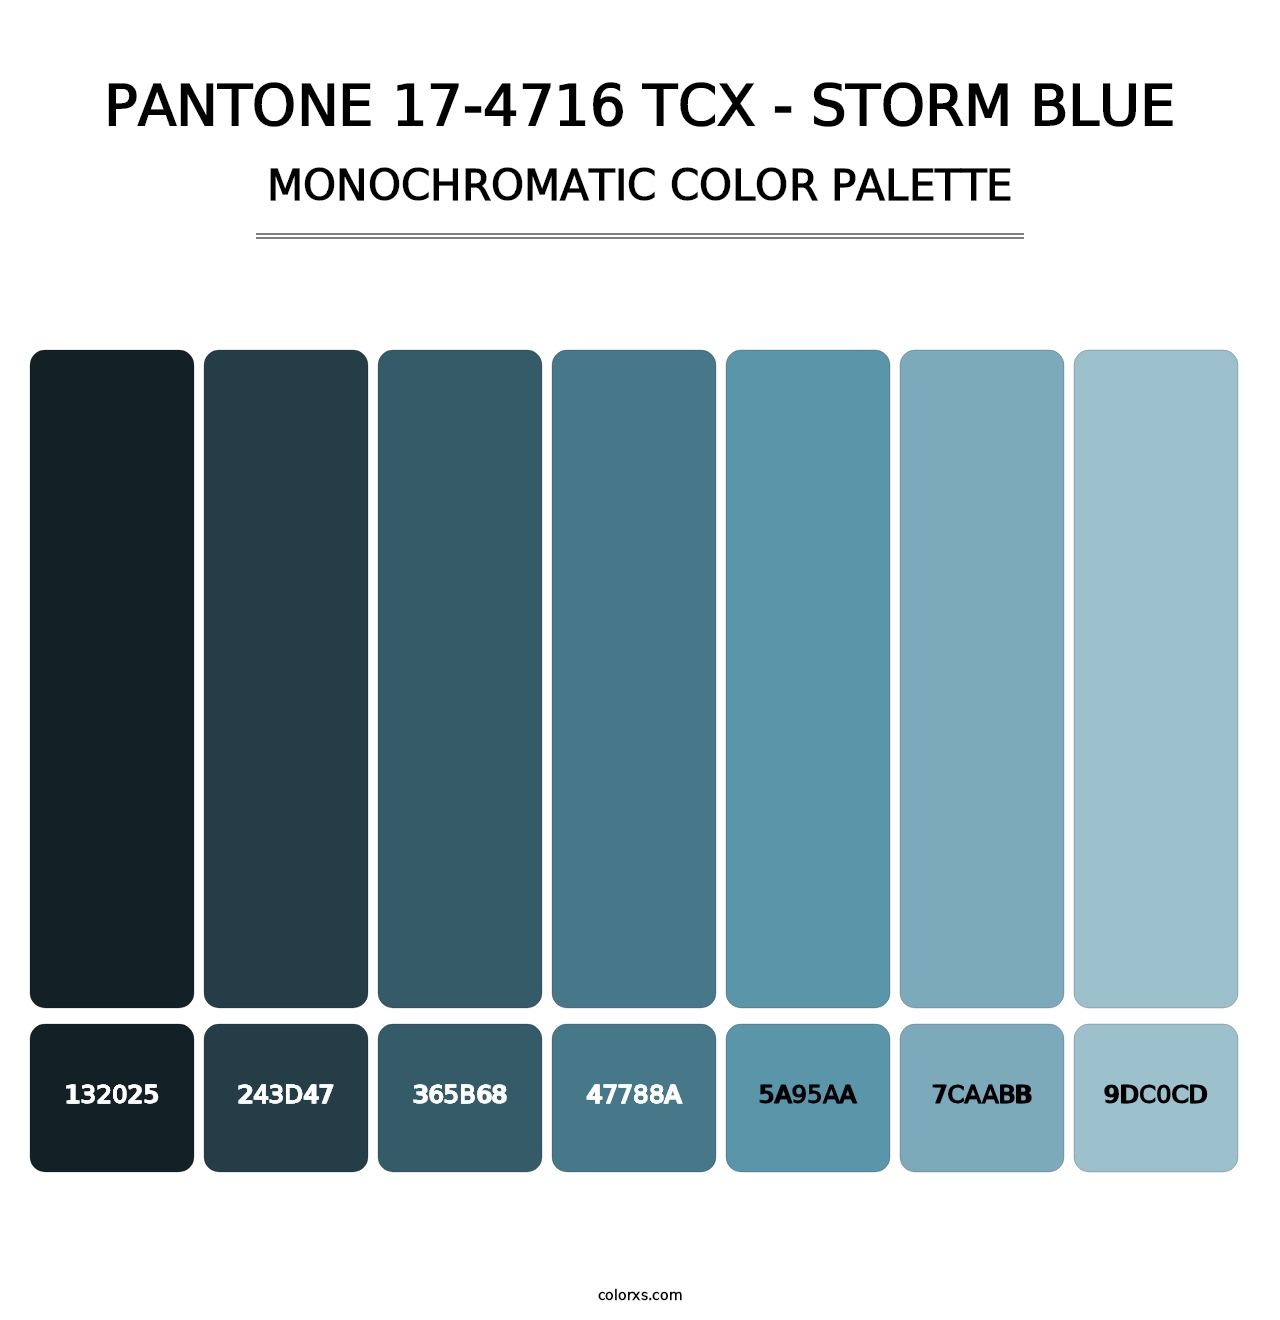 PANTONE 17-4716 TCX - Storm Blue - Monochromatic Color Palette